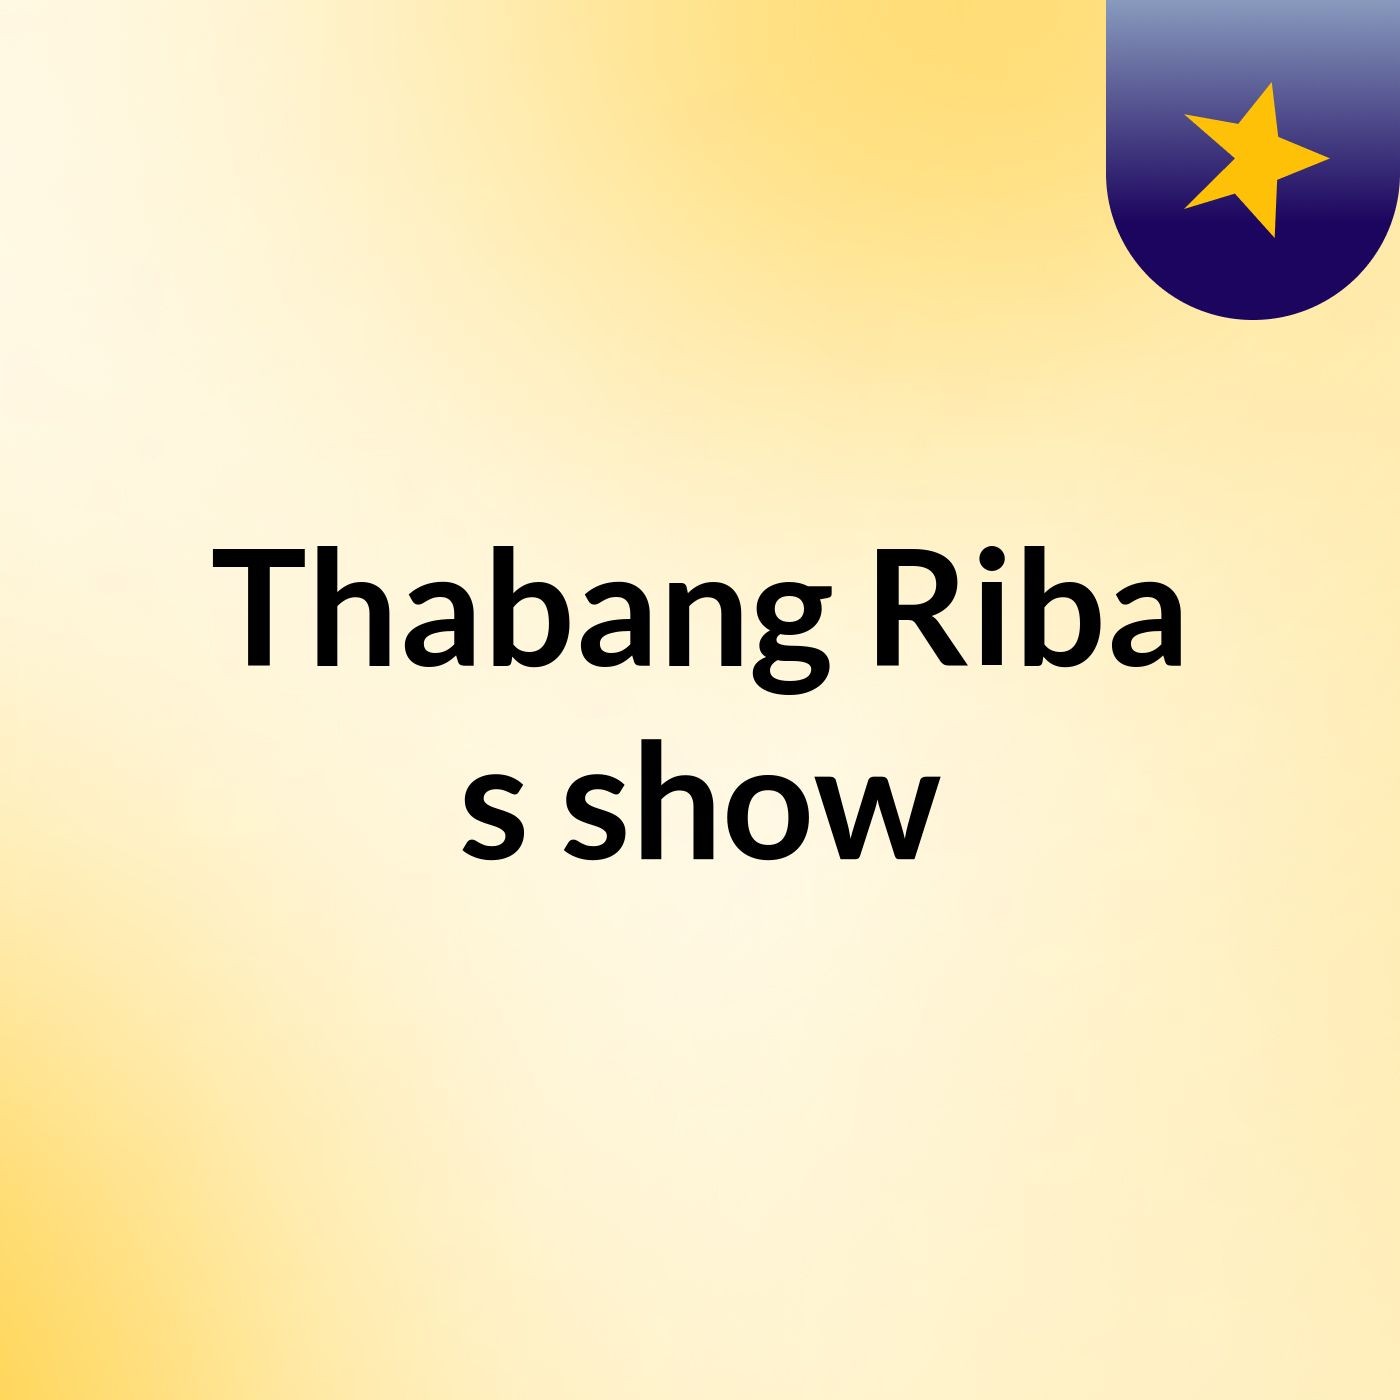 Thabang Riba's show